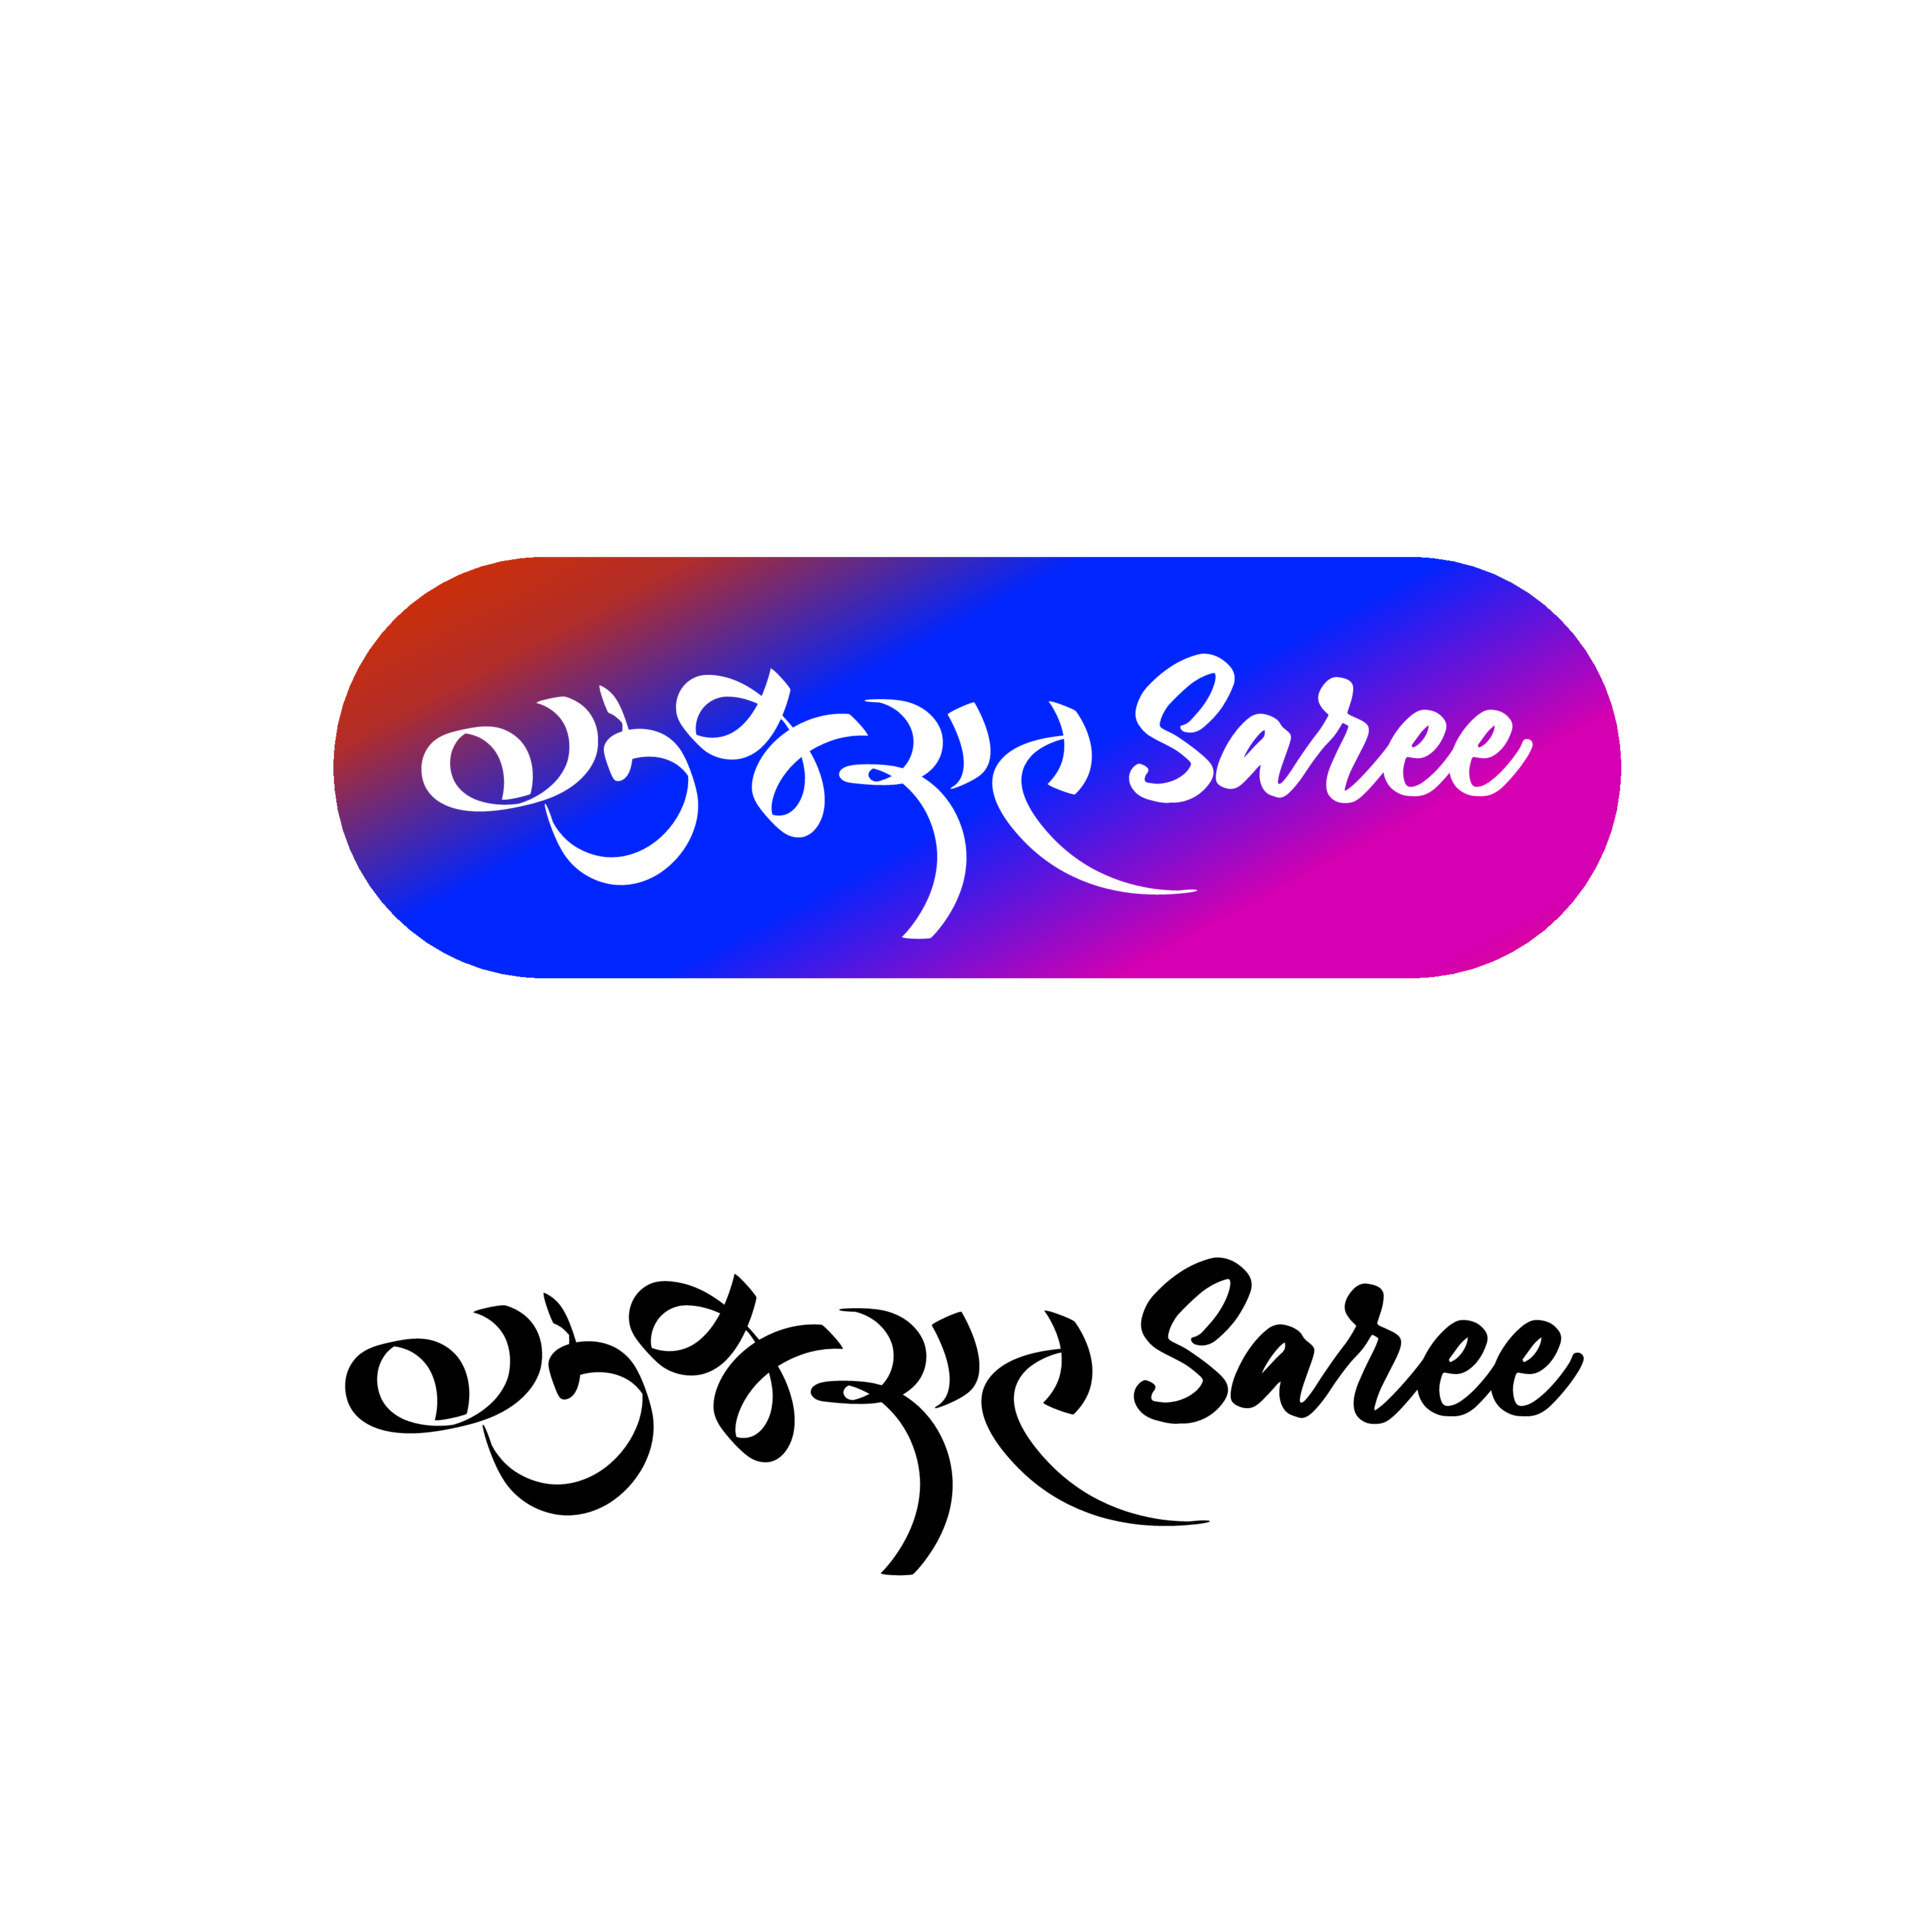 Details more than 134 saree business logo - vietkidsiq.edu.vn